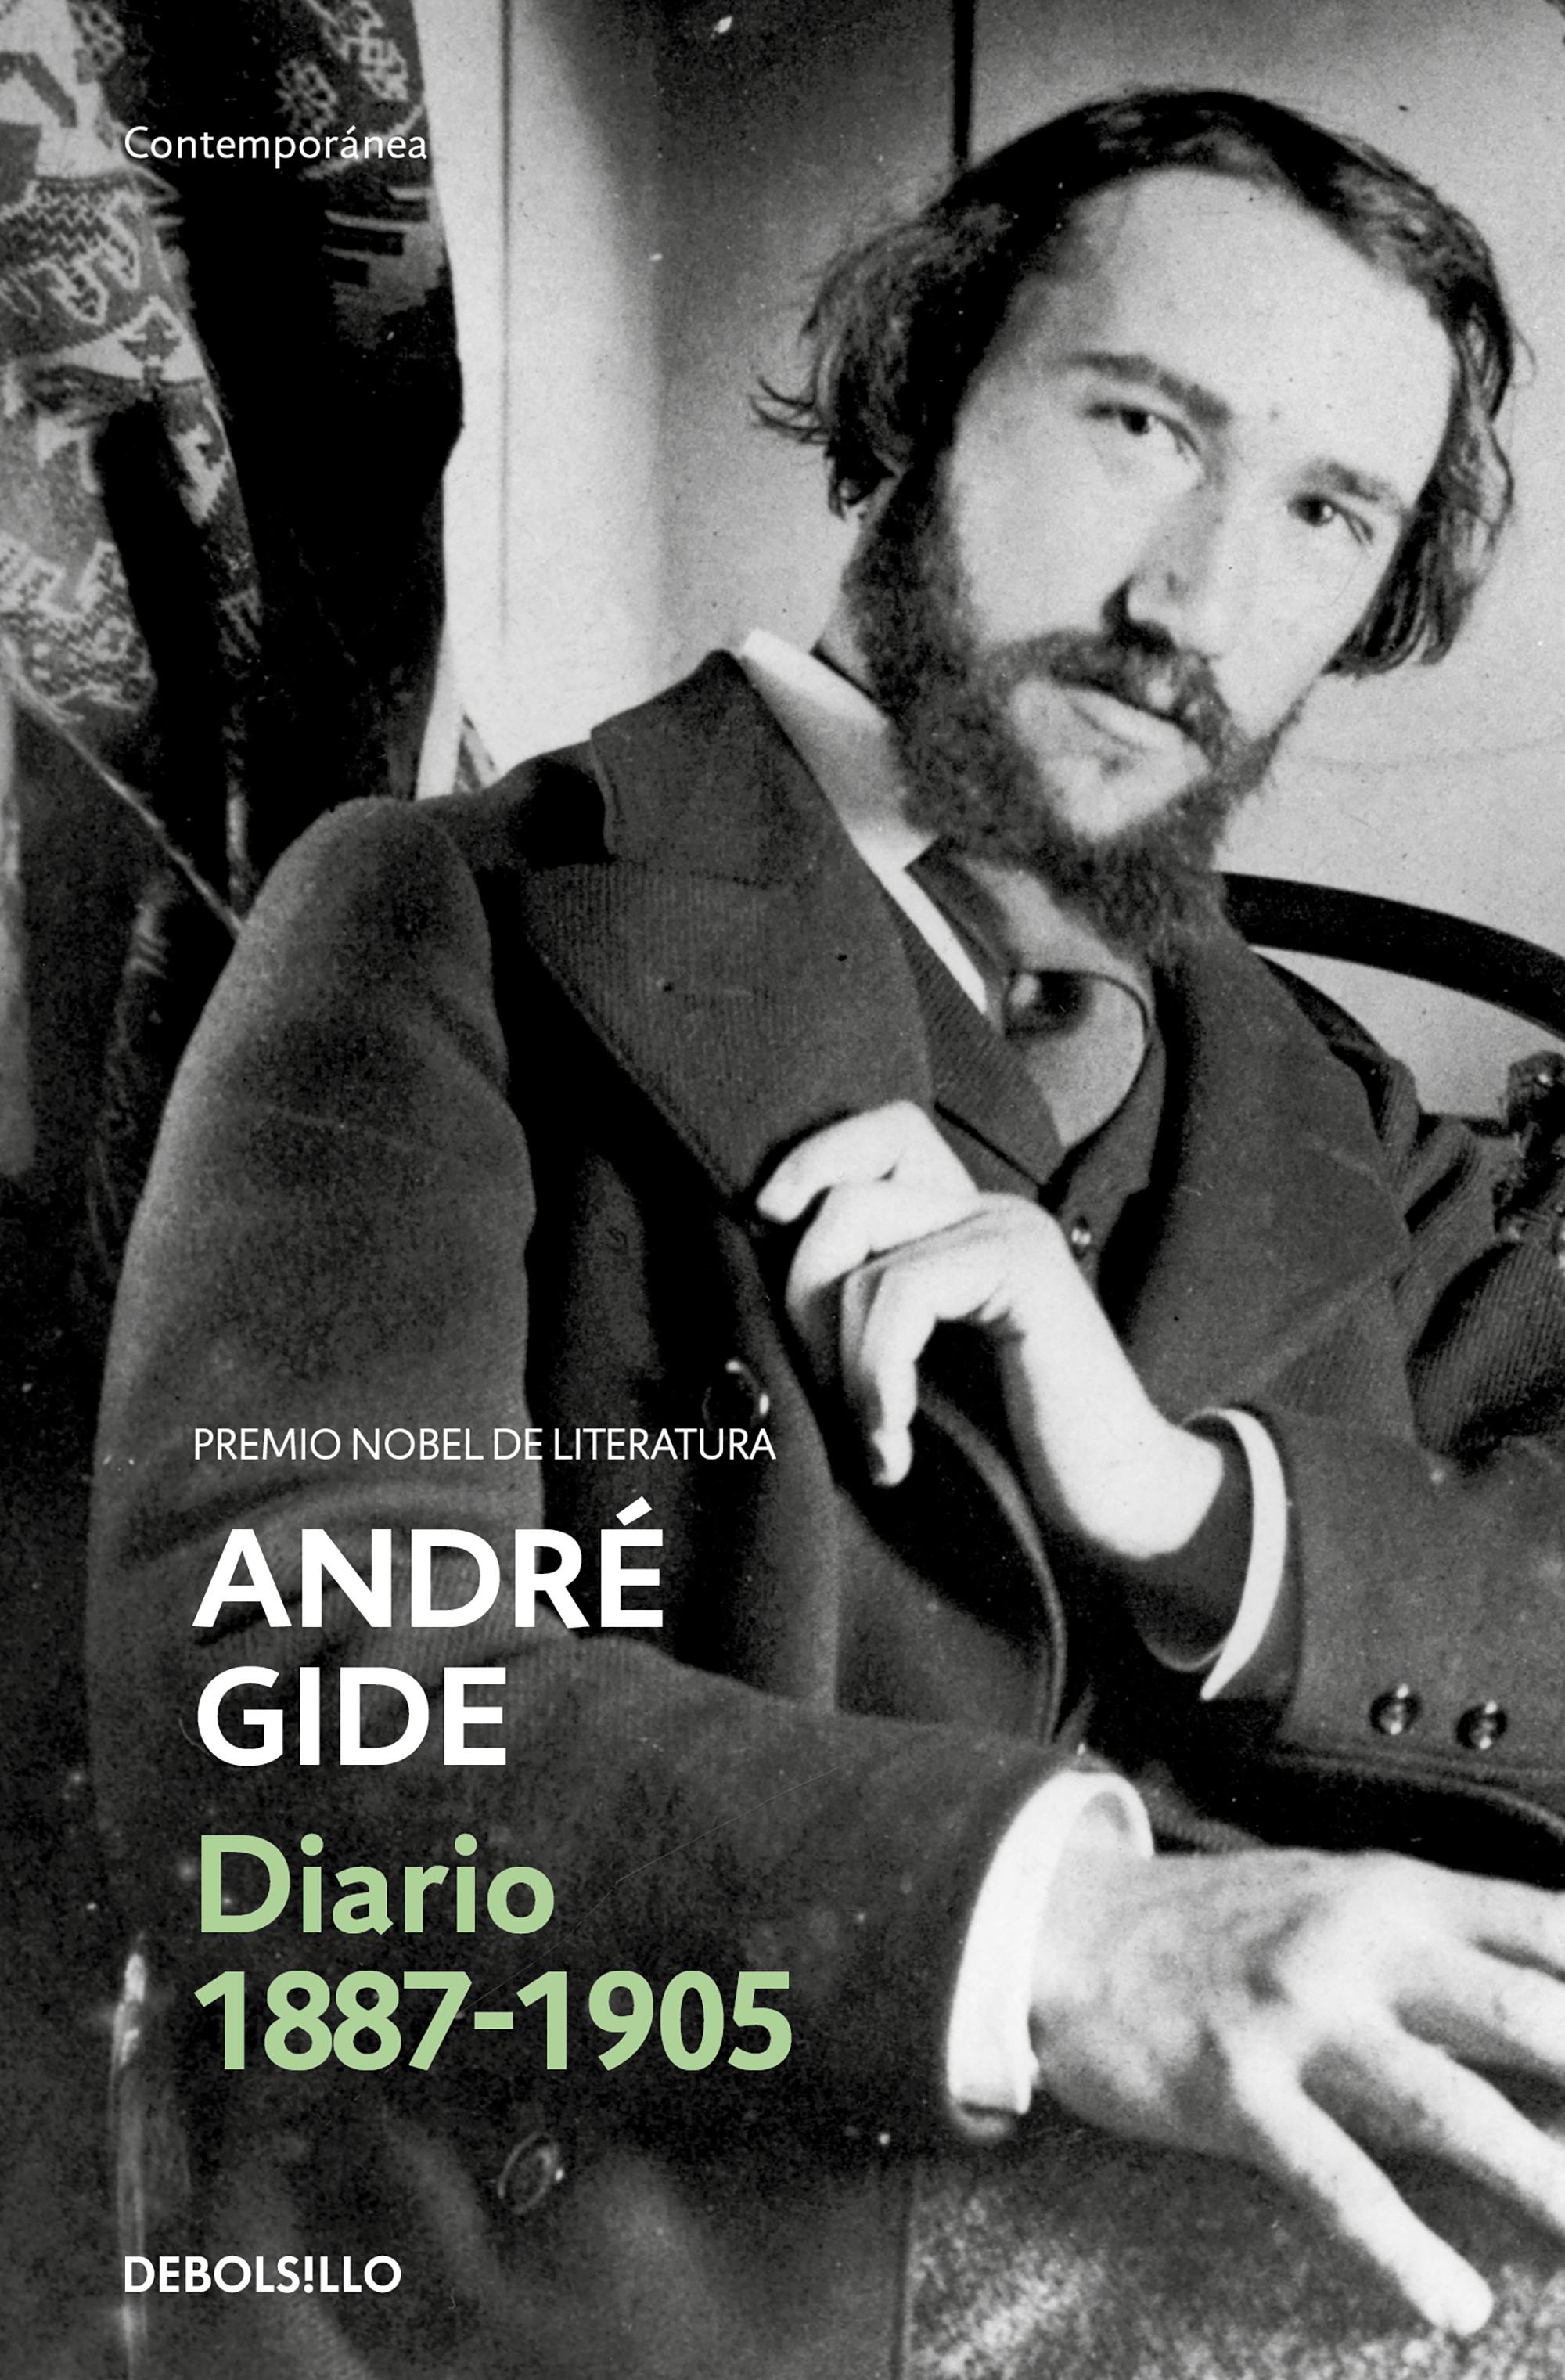 Diario, 1887-1910 "(André Gide)"